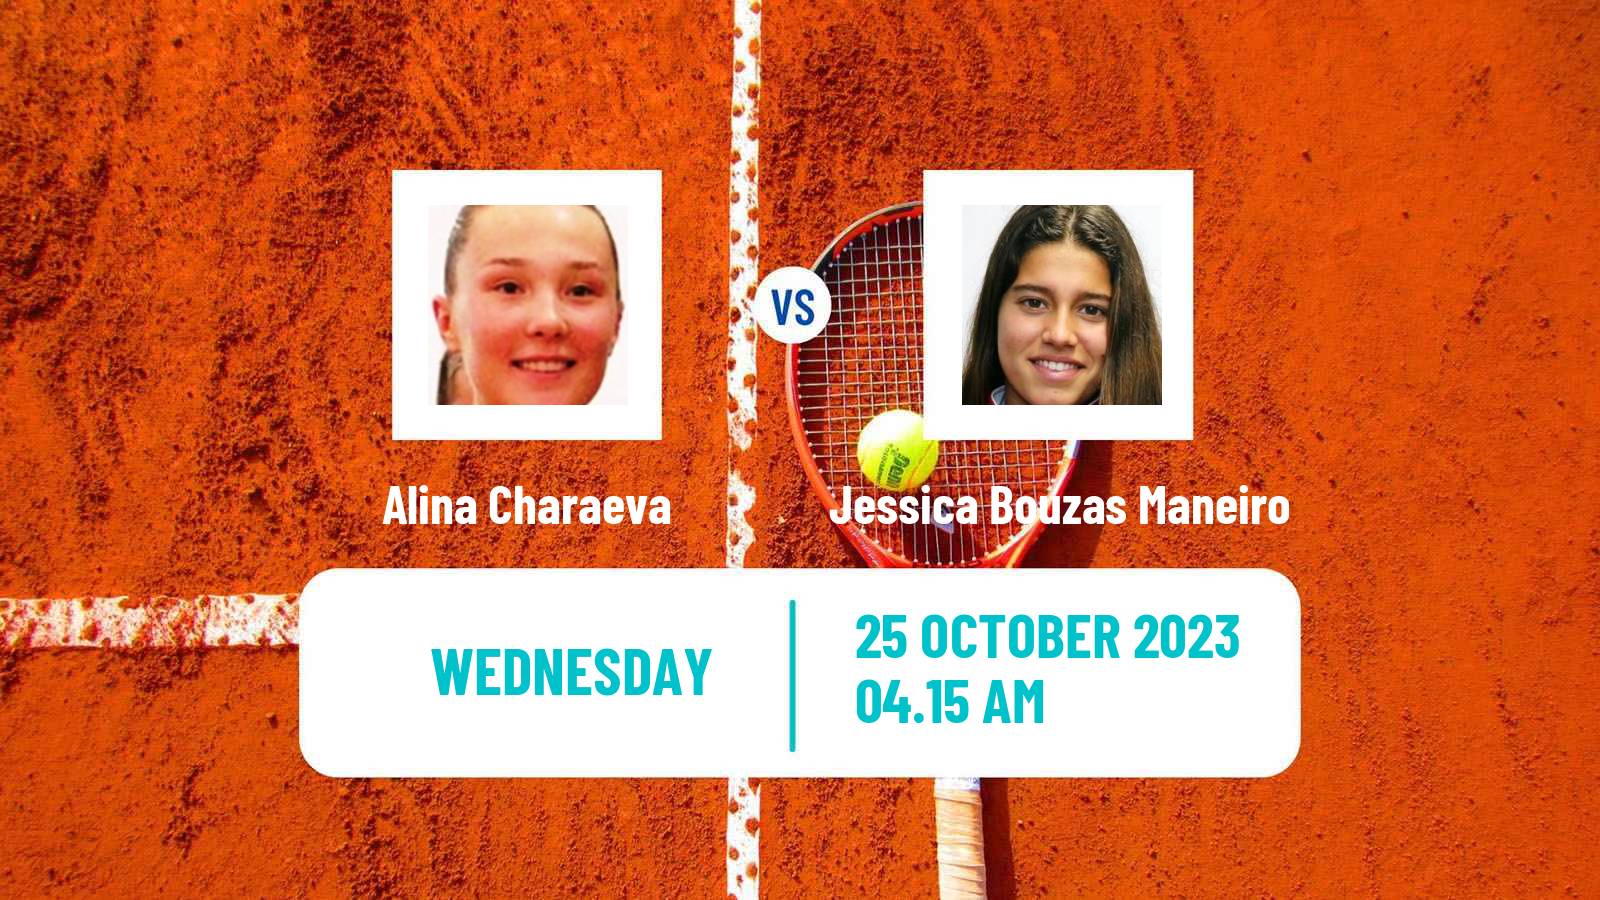 Tennis ITF W100 Les Franqueses Del Valles Women Alina Charaeva - Jessica Bouzas Maneiro